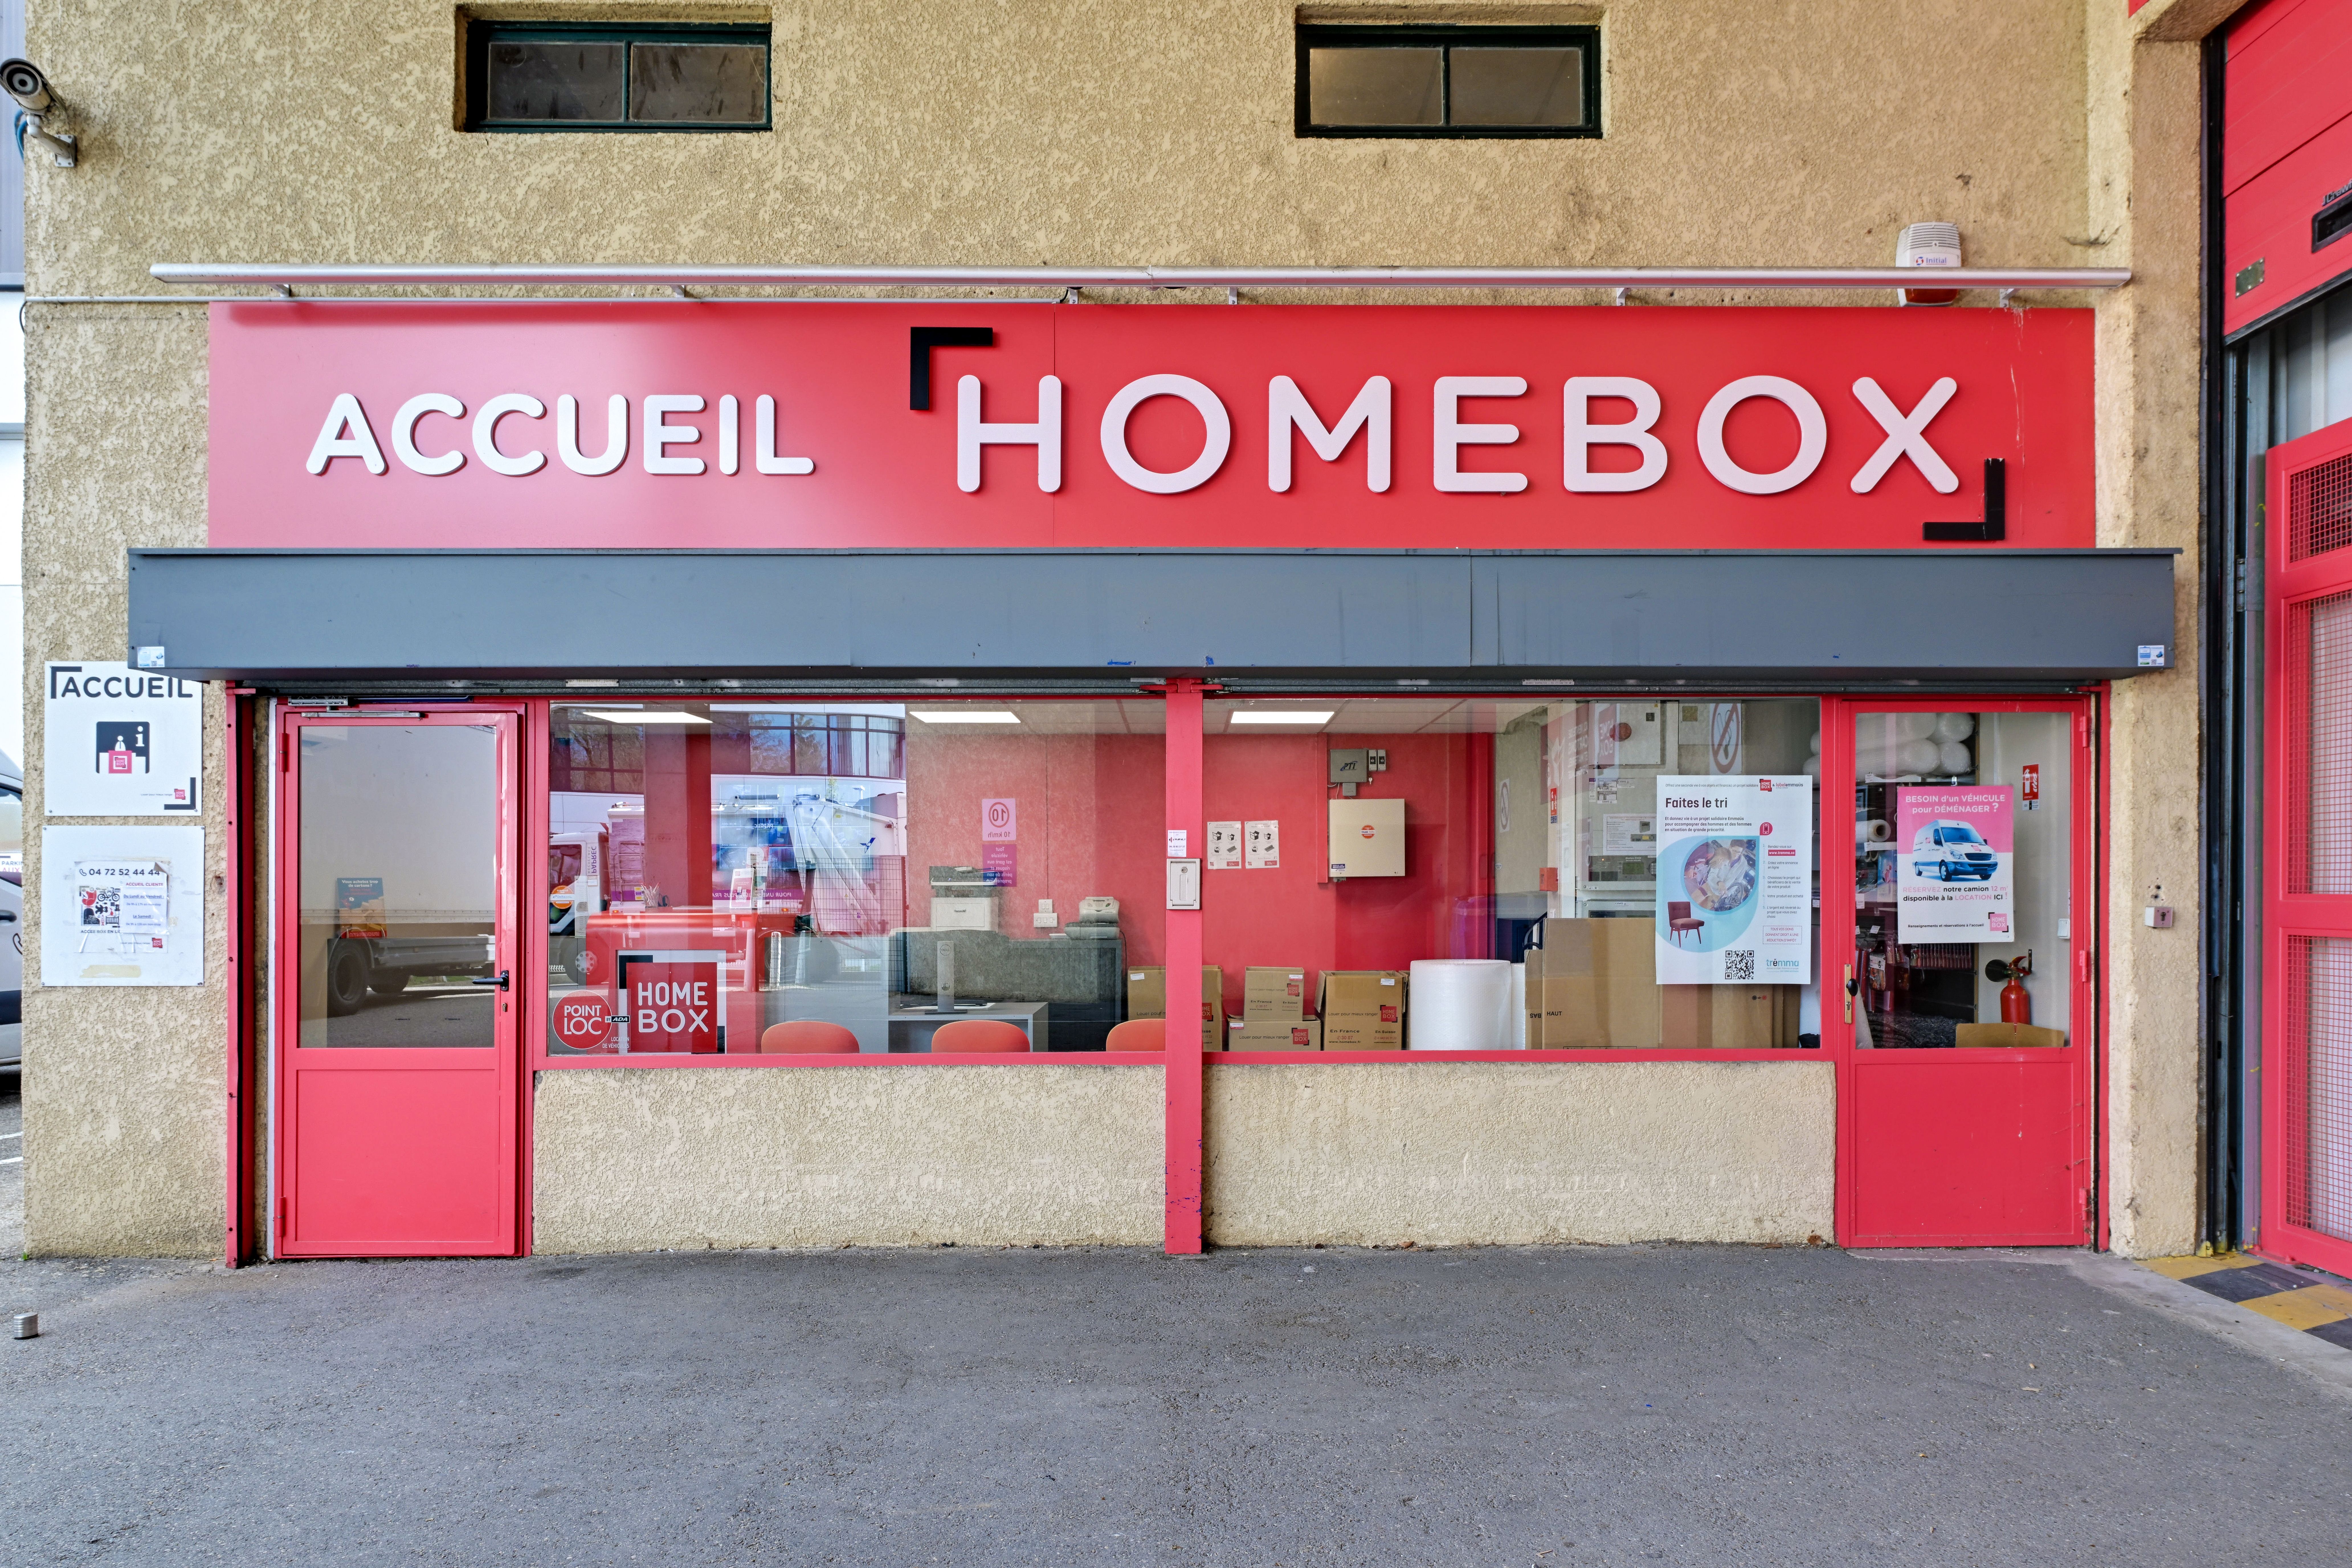 Location de Box de Stockage à Dijon - Solubox France